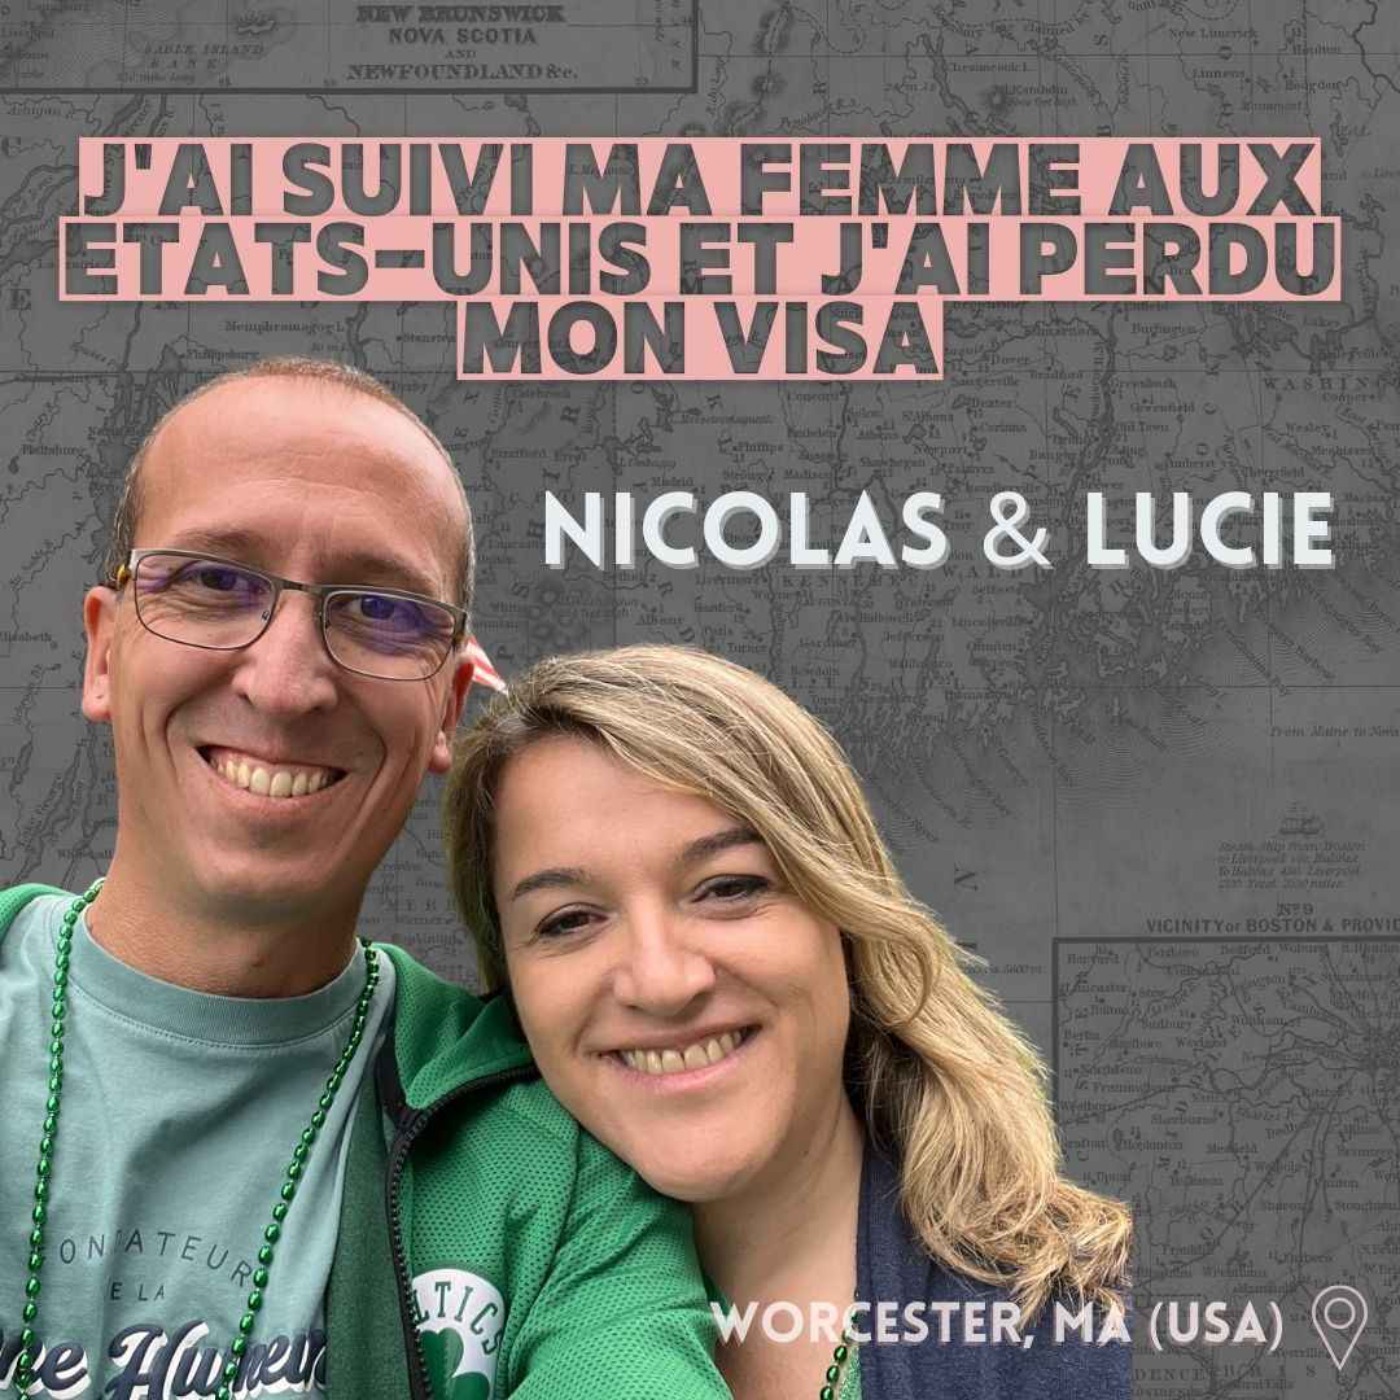 Nicolas & Lucie  (Worcester, MA) : ≪J’ai suivi ma femme aux Etats-Unis, et j’ai perdu mon visa≫